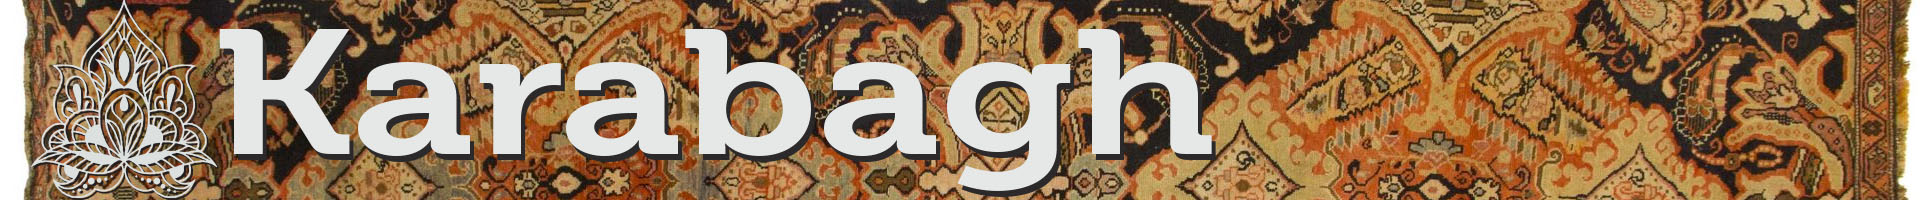 Karabagh Rugs - A History